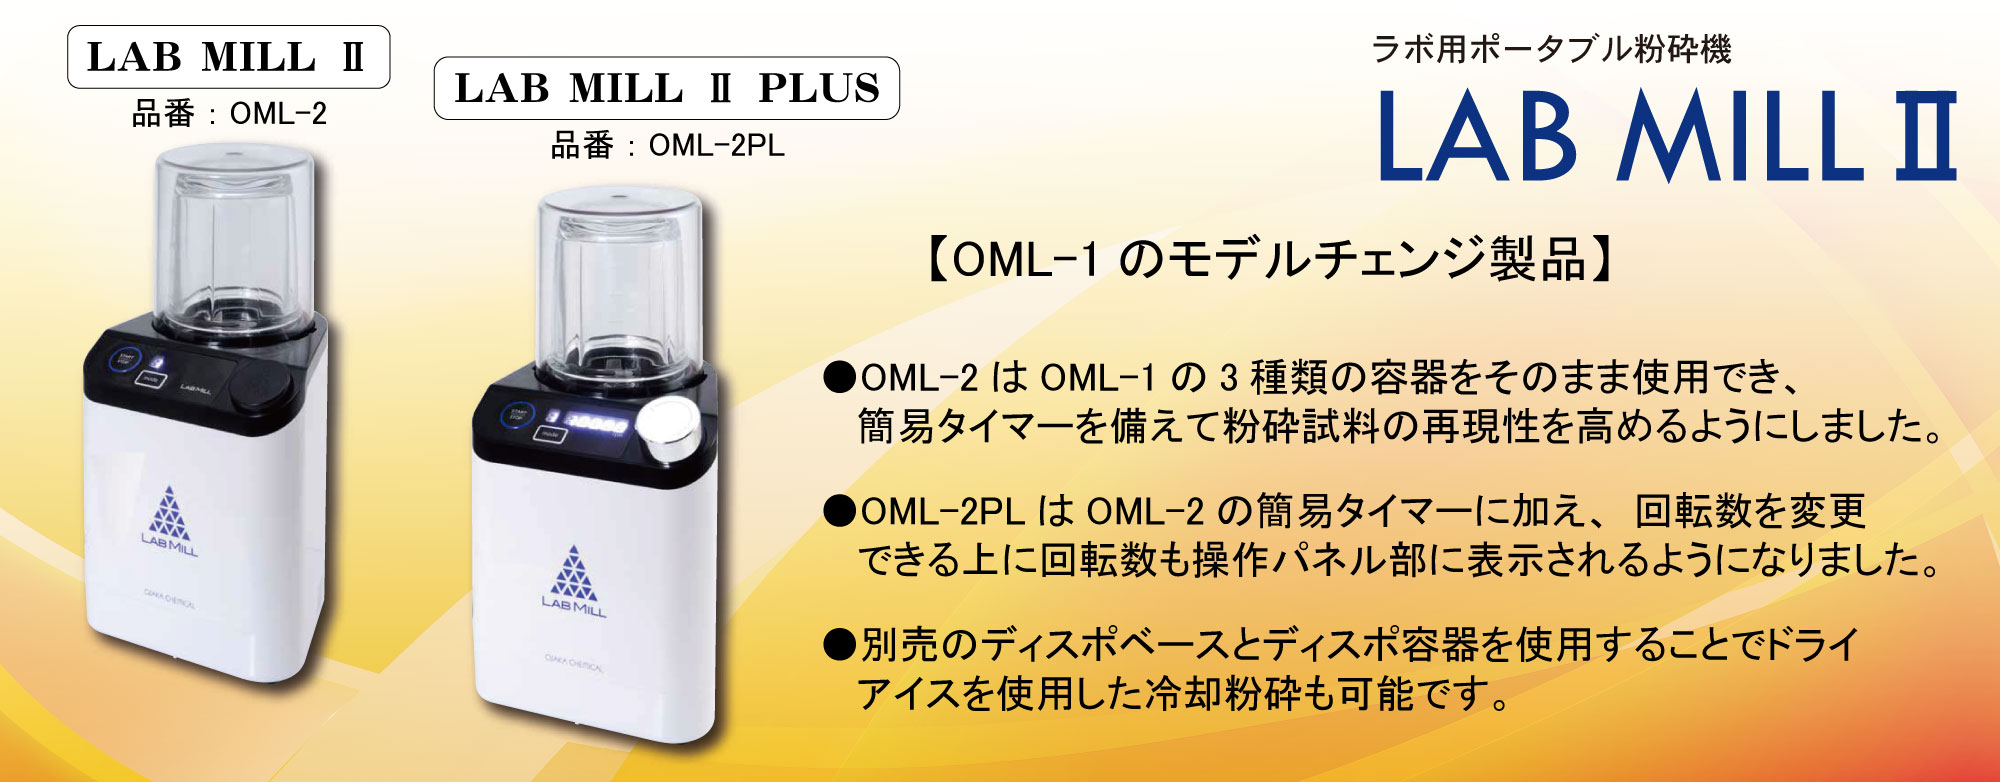 価格交渉OK送料無料 NEXT OSAKA CHEMICAL 大阪ケミカル ハンドクラッシャー HC-1